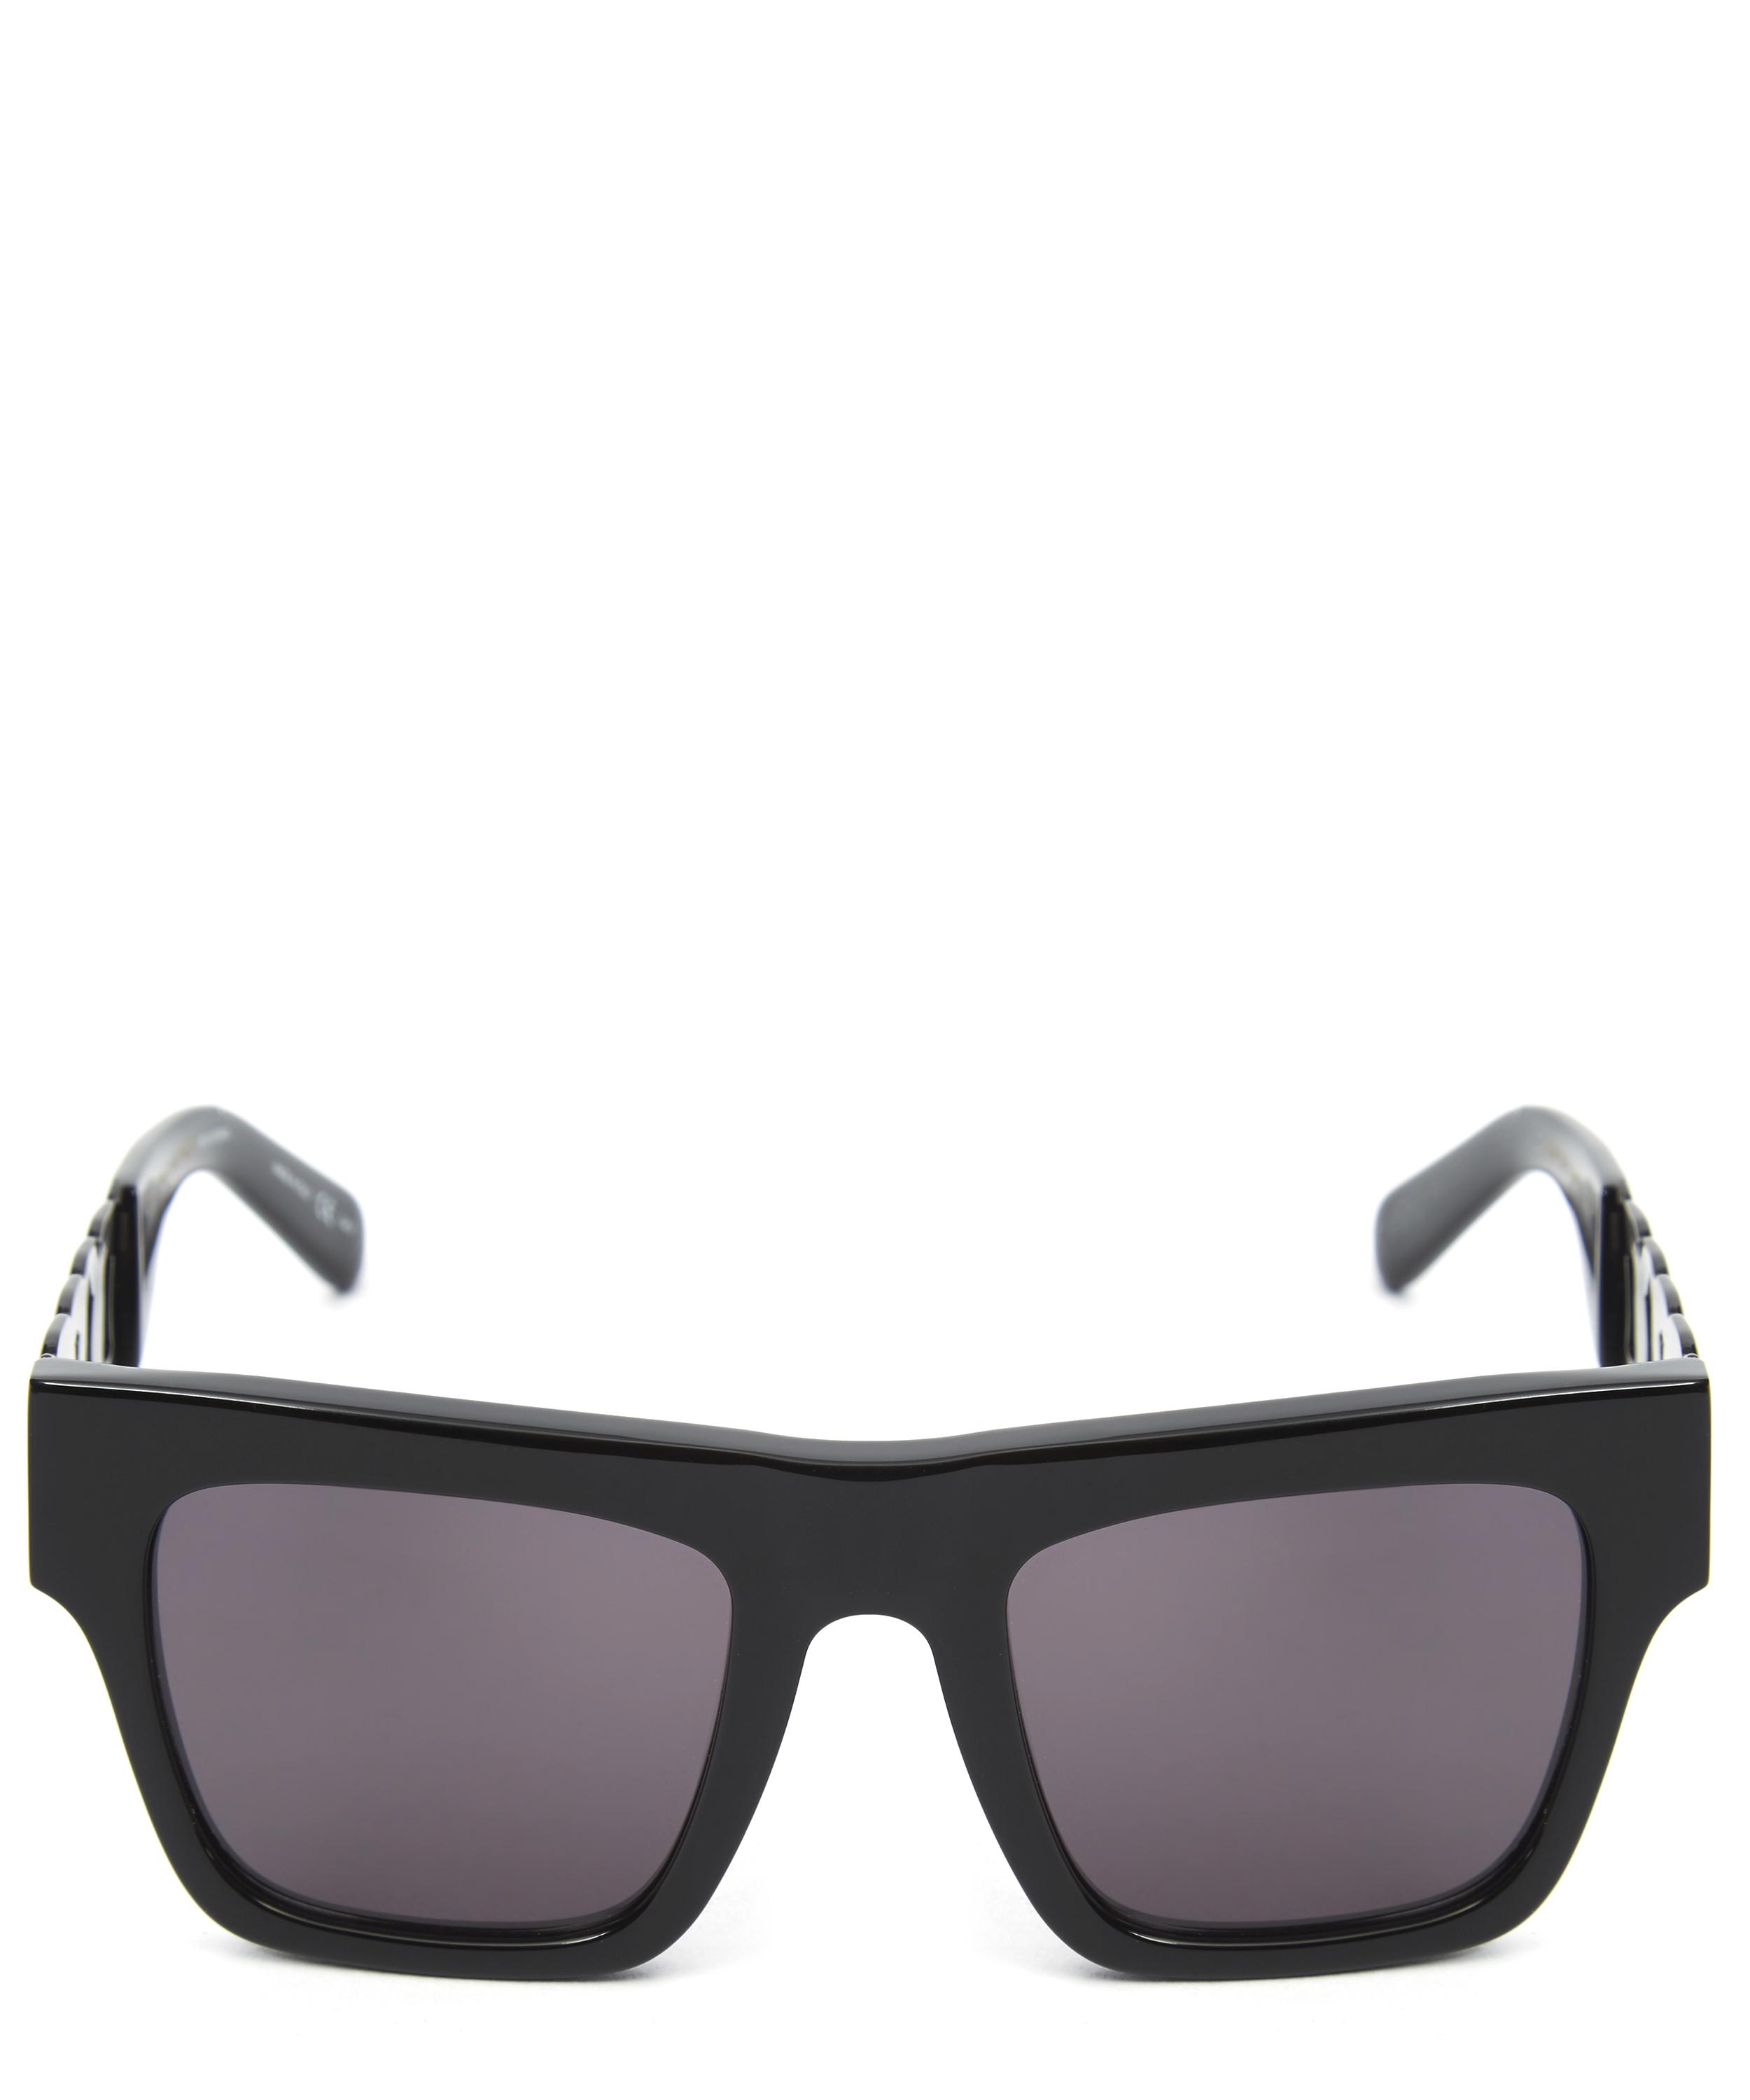 Sunglasses to suit your face shape | Feature | Libertylondon.com ...